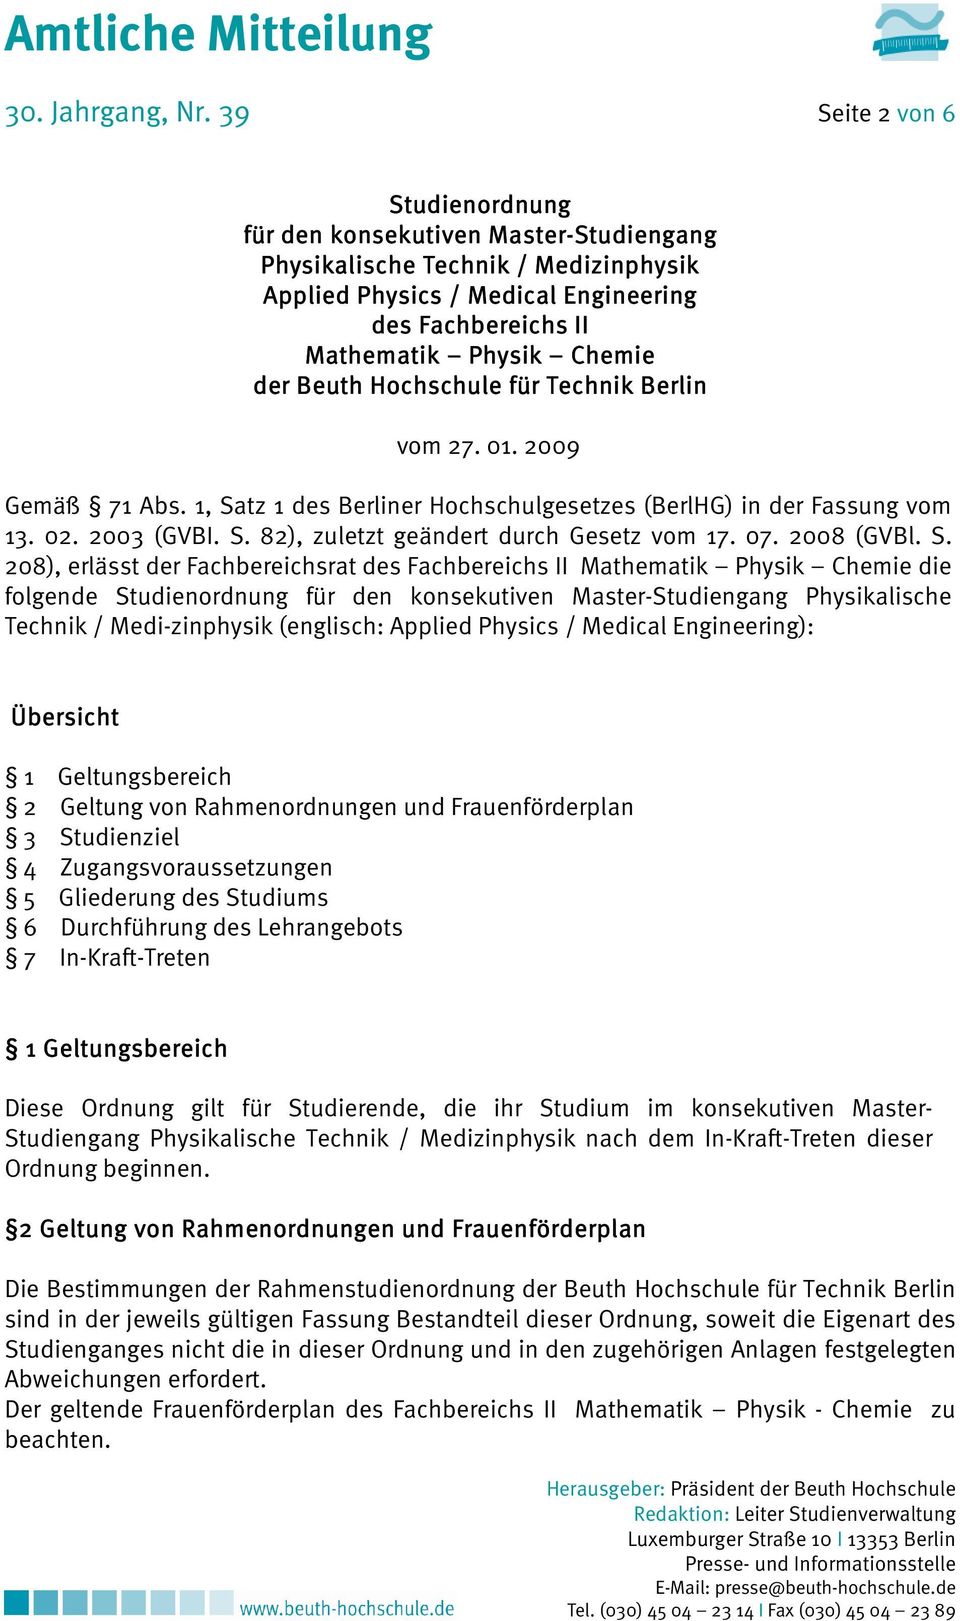 Beuth Hochschule für Technik Berlin vom 27. 01. 2009 Gemäß 71 Abs. 1, Satz 1 des Berliner Hochschulgesetzes (BerlHG) in der Fassung vom 13. 02. 2003 (GVBI. S. 82), zuletzt geändert durch Gesetz vom 17.